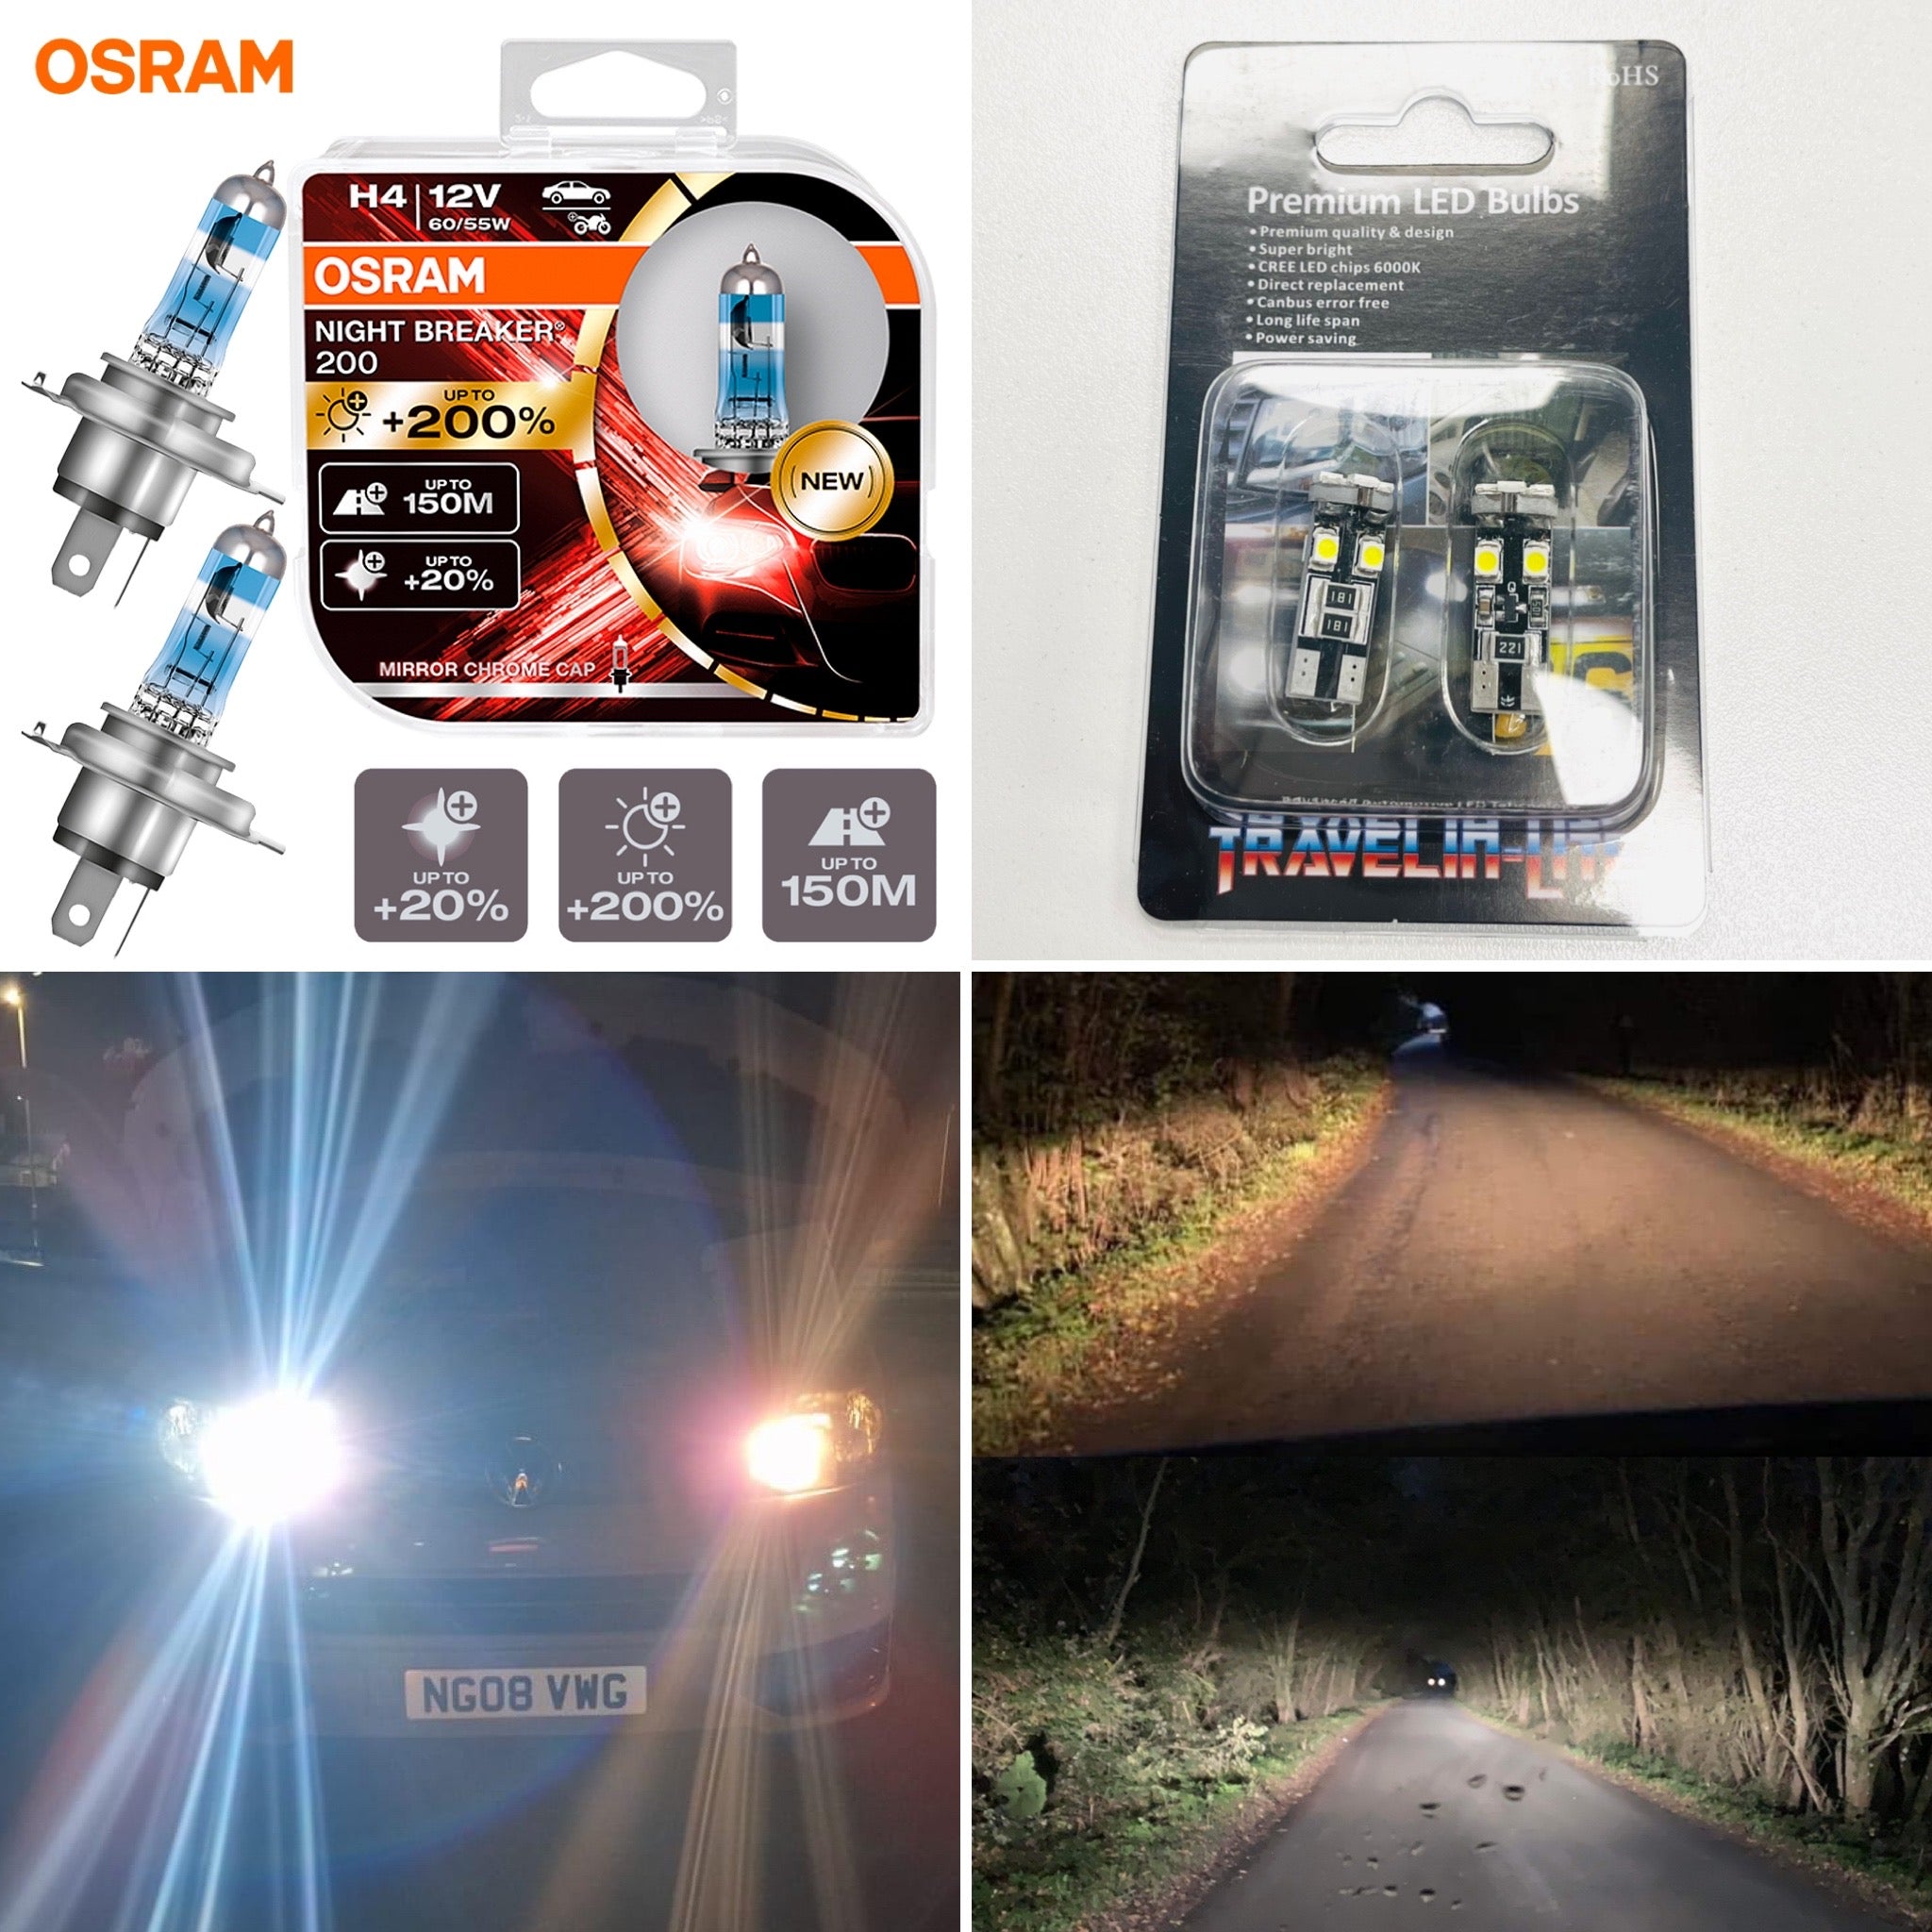 OSRAM Night Breaker 200 H4 9003 Car Halogen Headlight +200% More